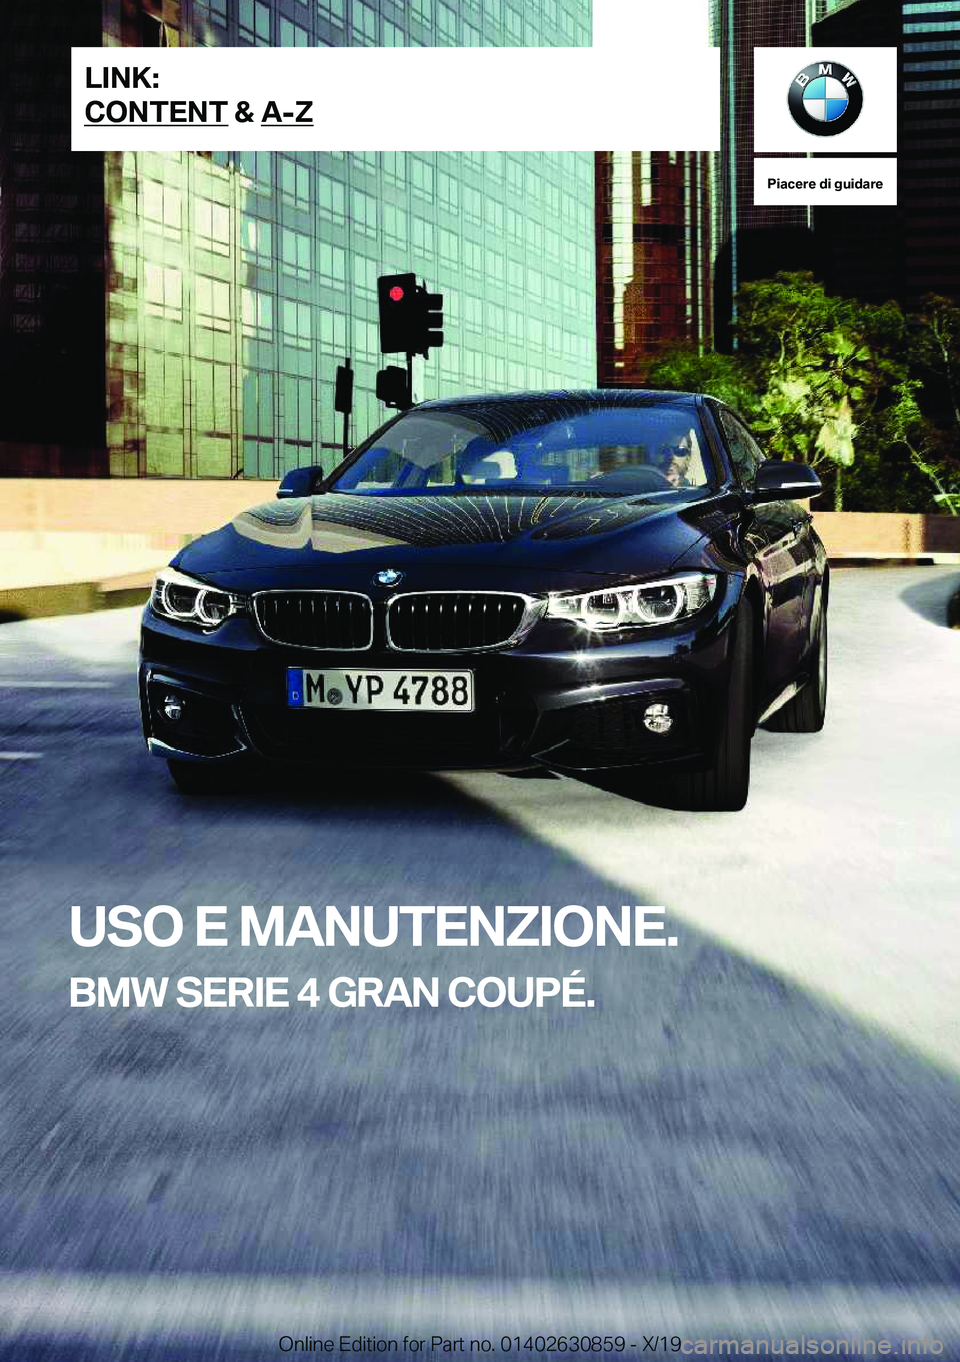 BMW 4 SERIES GRAN COUPE 2020  Libretti Di Uso E manutenzione (in Italian) �P�i�a�c�e�r�e��d�i��g�u�i�d�a�r�e
�U�S�O��E��M�A�N�U�T�E�N�;�I�O�N�E�.
�B�M�W��S�E�R�I�E��4��G�R�A�N��C�O�U�P�